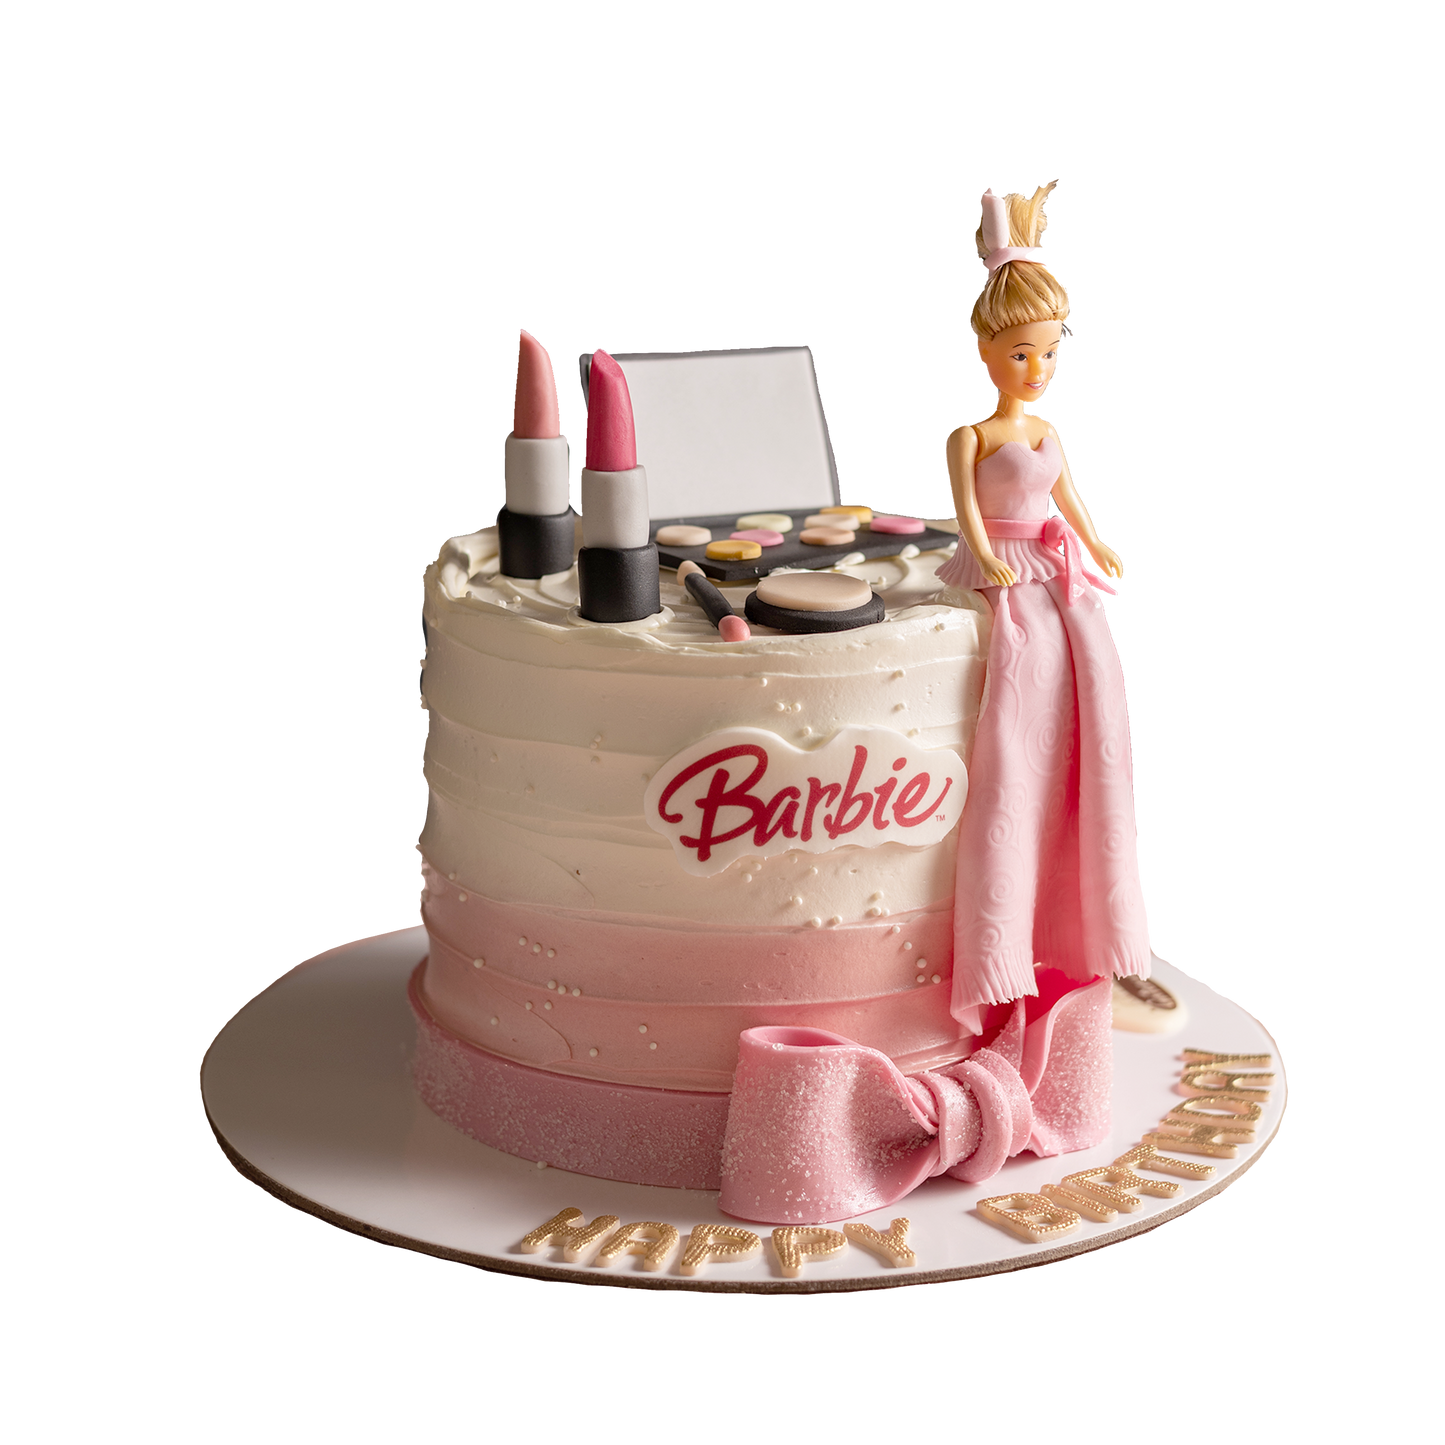 Barbie Makeup Cake